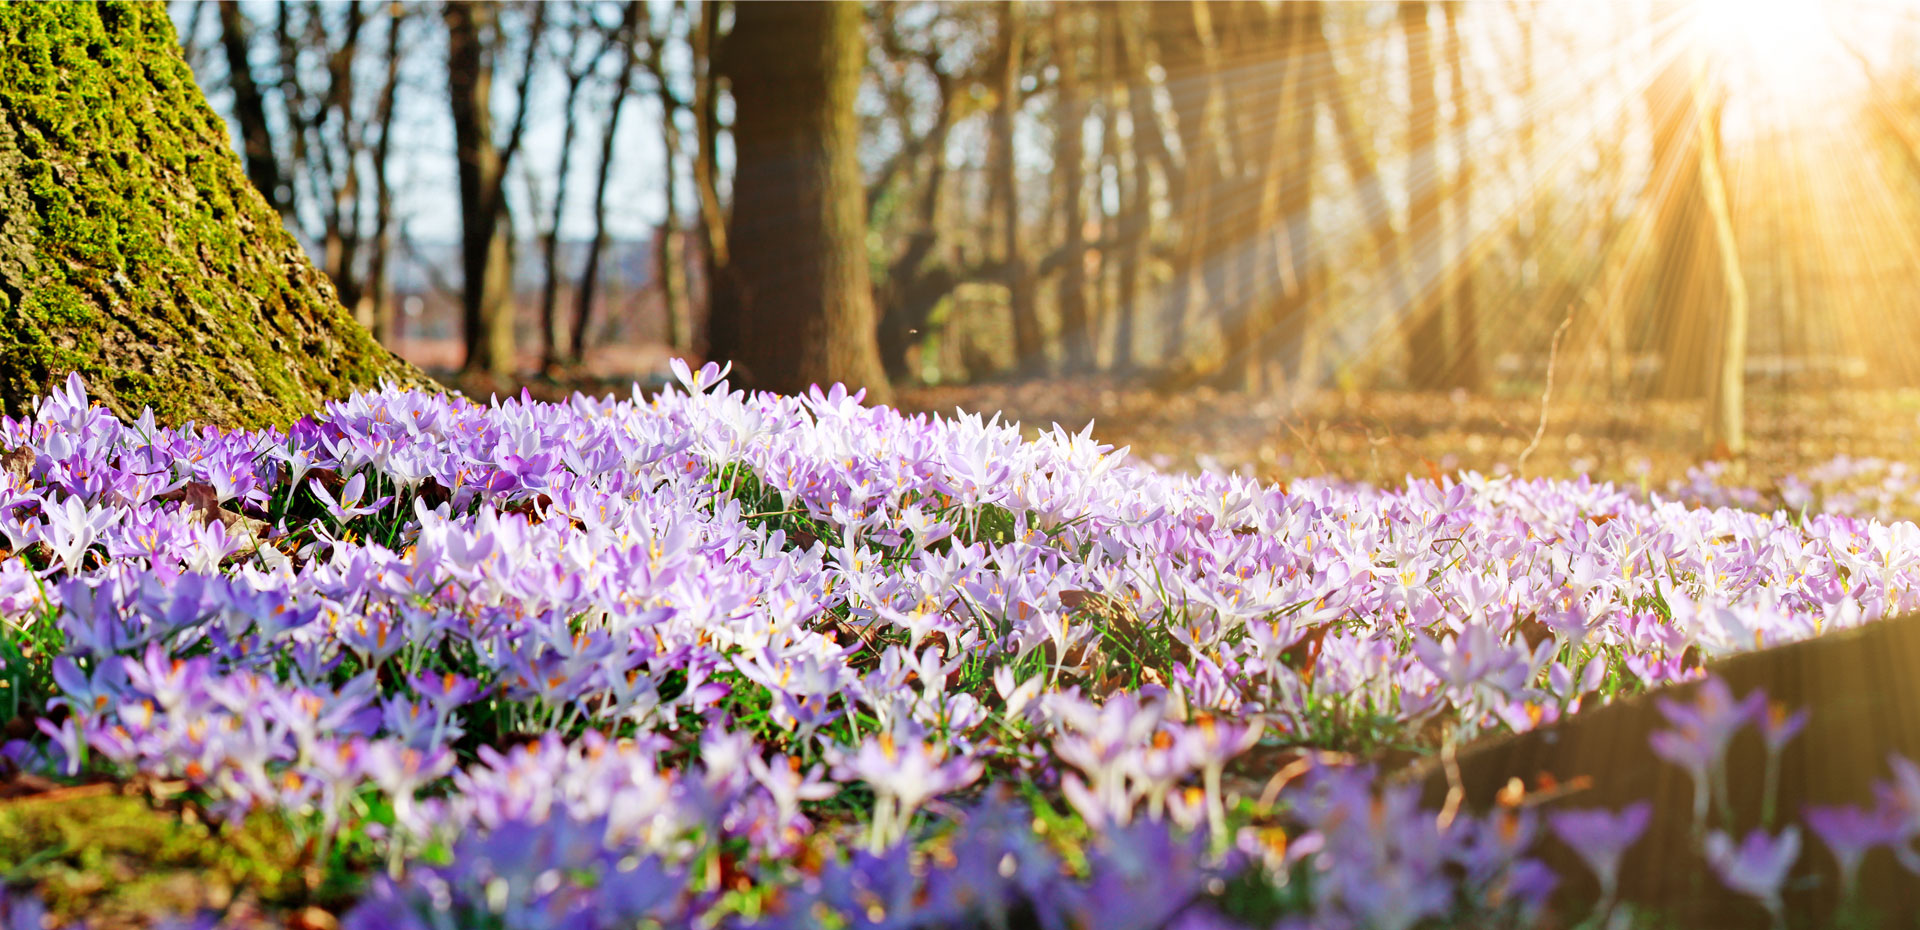 Frühling - Sonnenschein fällt sanft auf ein violettes Blumenmeer